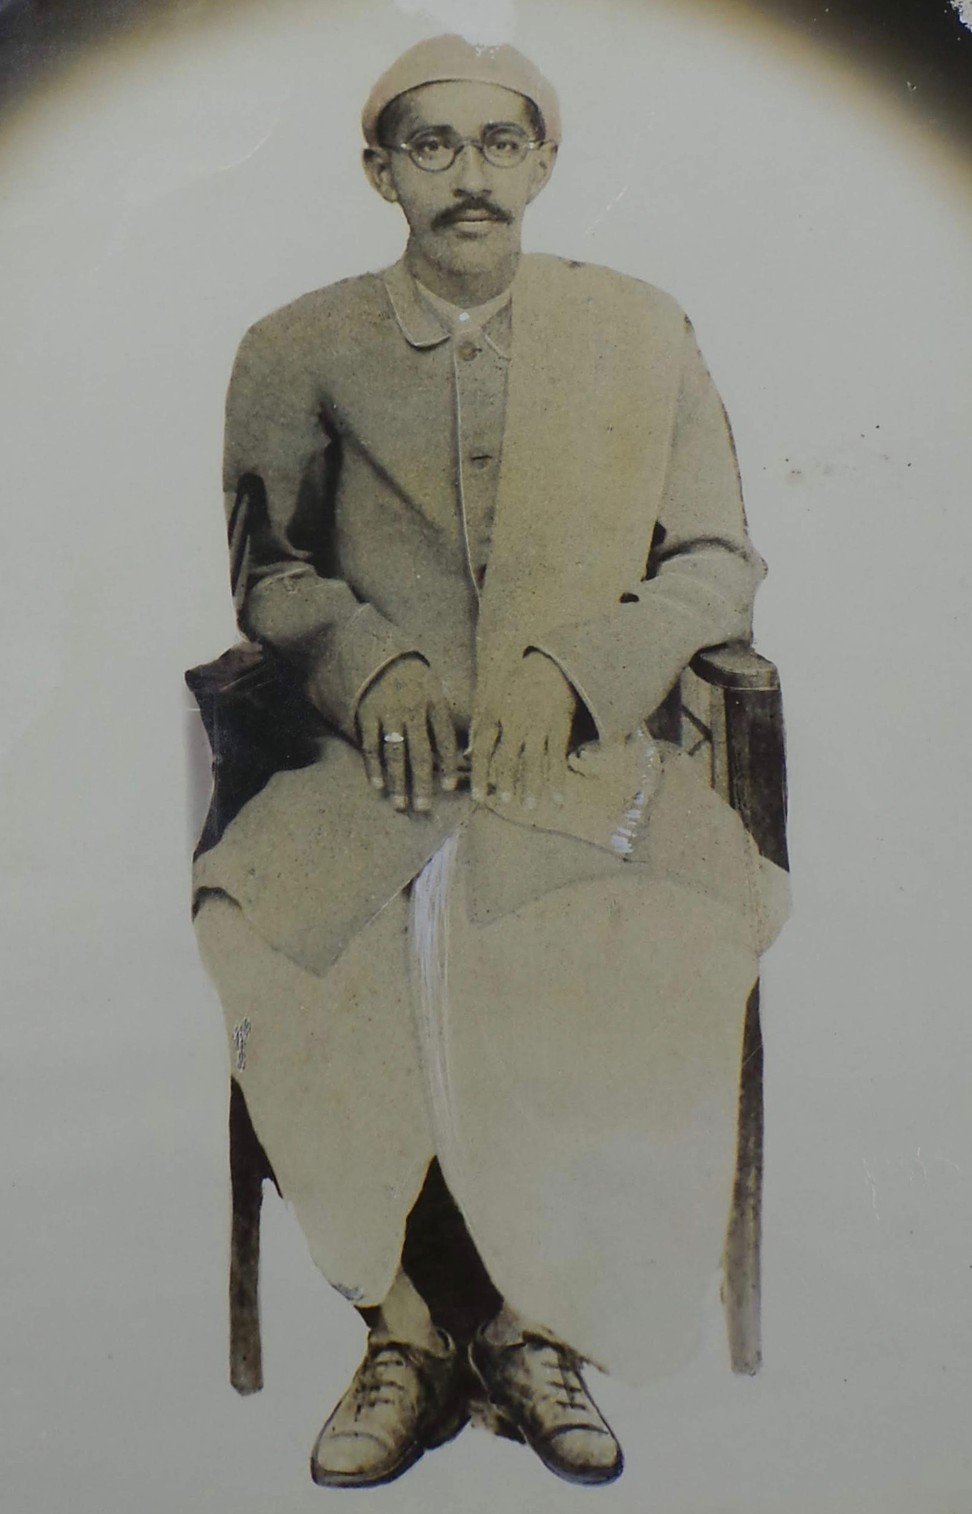 Lal Hardasani’s father Dipchand Chuharmal Hardasani wearing traditional Sindhi pyjamas, shirt and jacket in 1937.